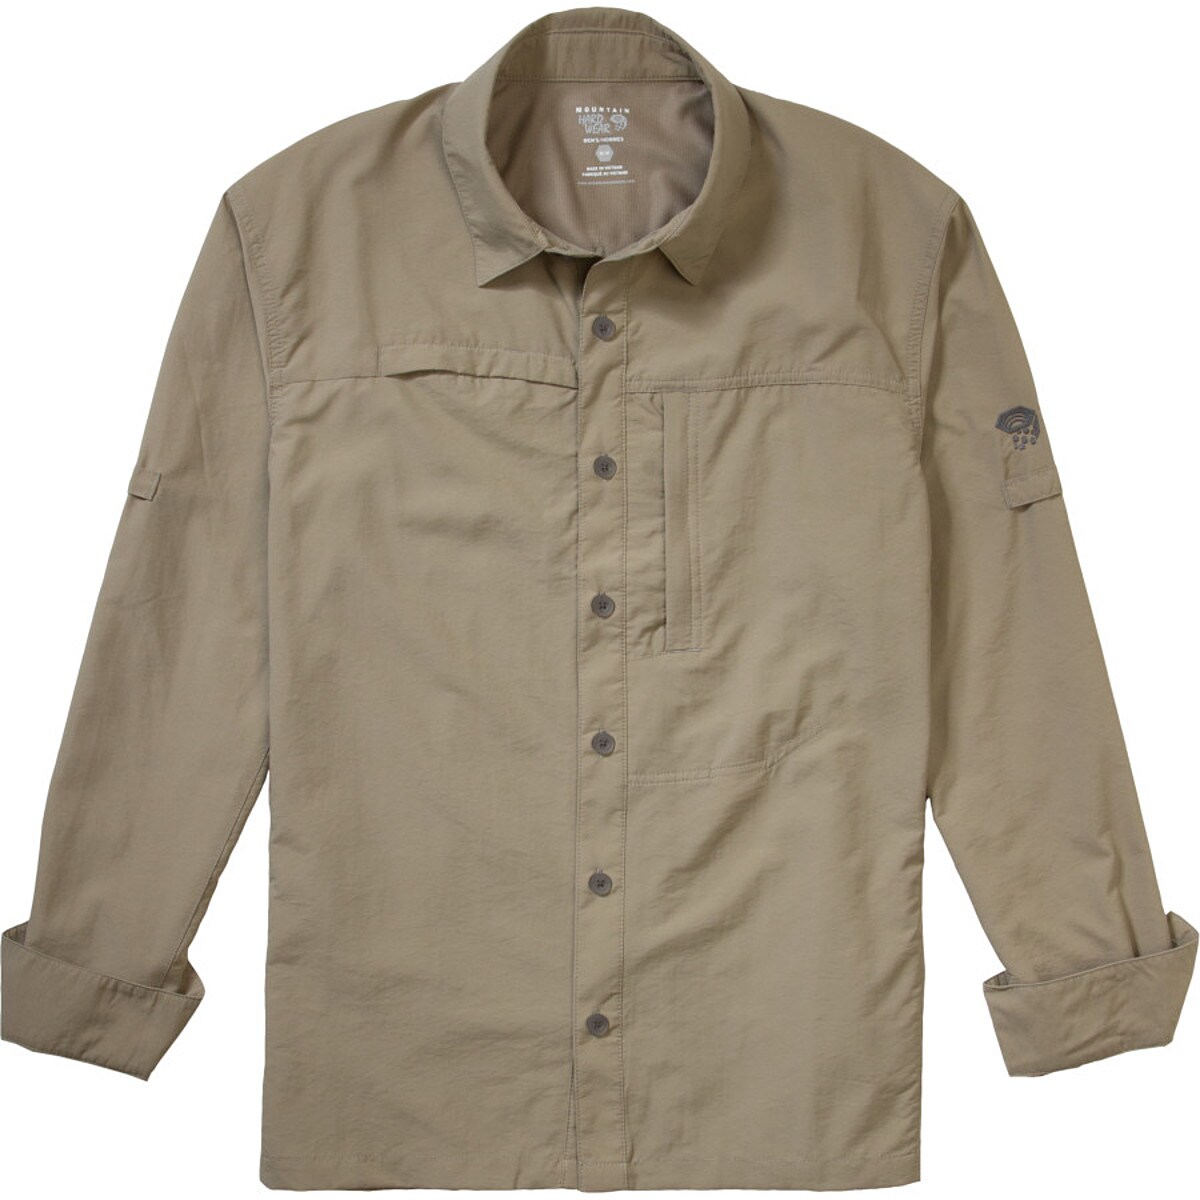 Mountain Hardwear Canyon Shirt Long Sleeve Reviews - Trailspace.com